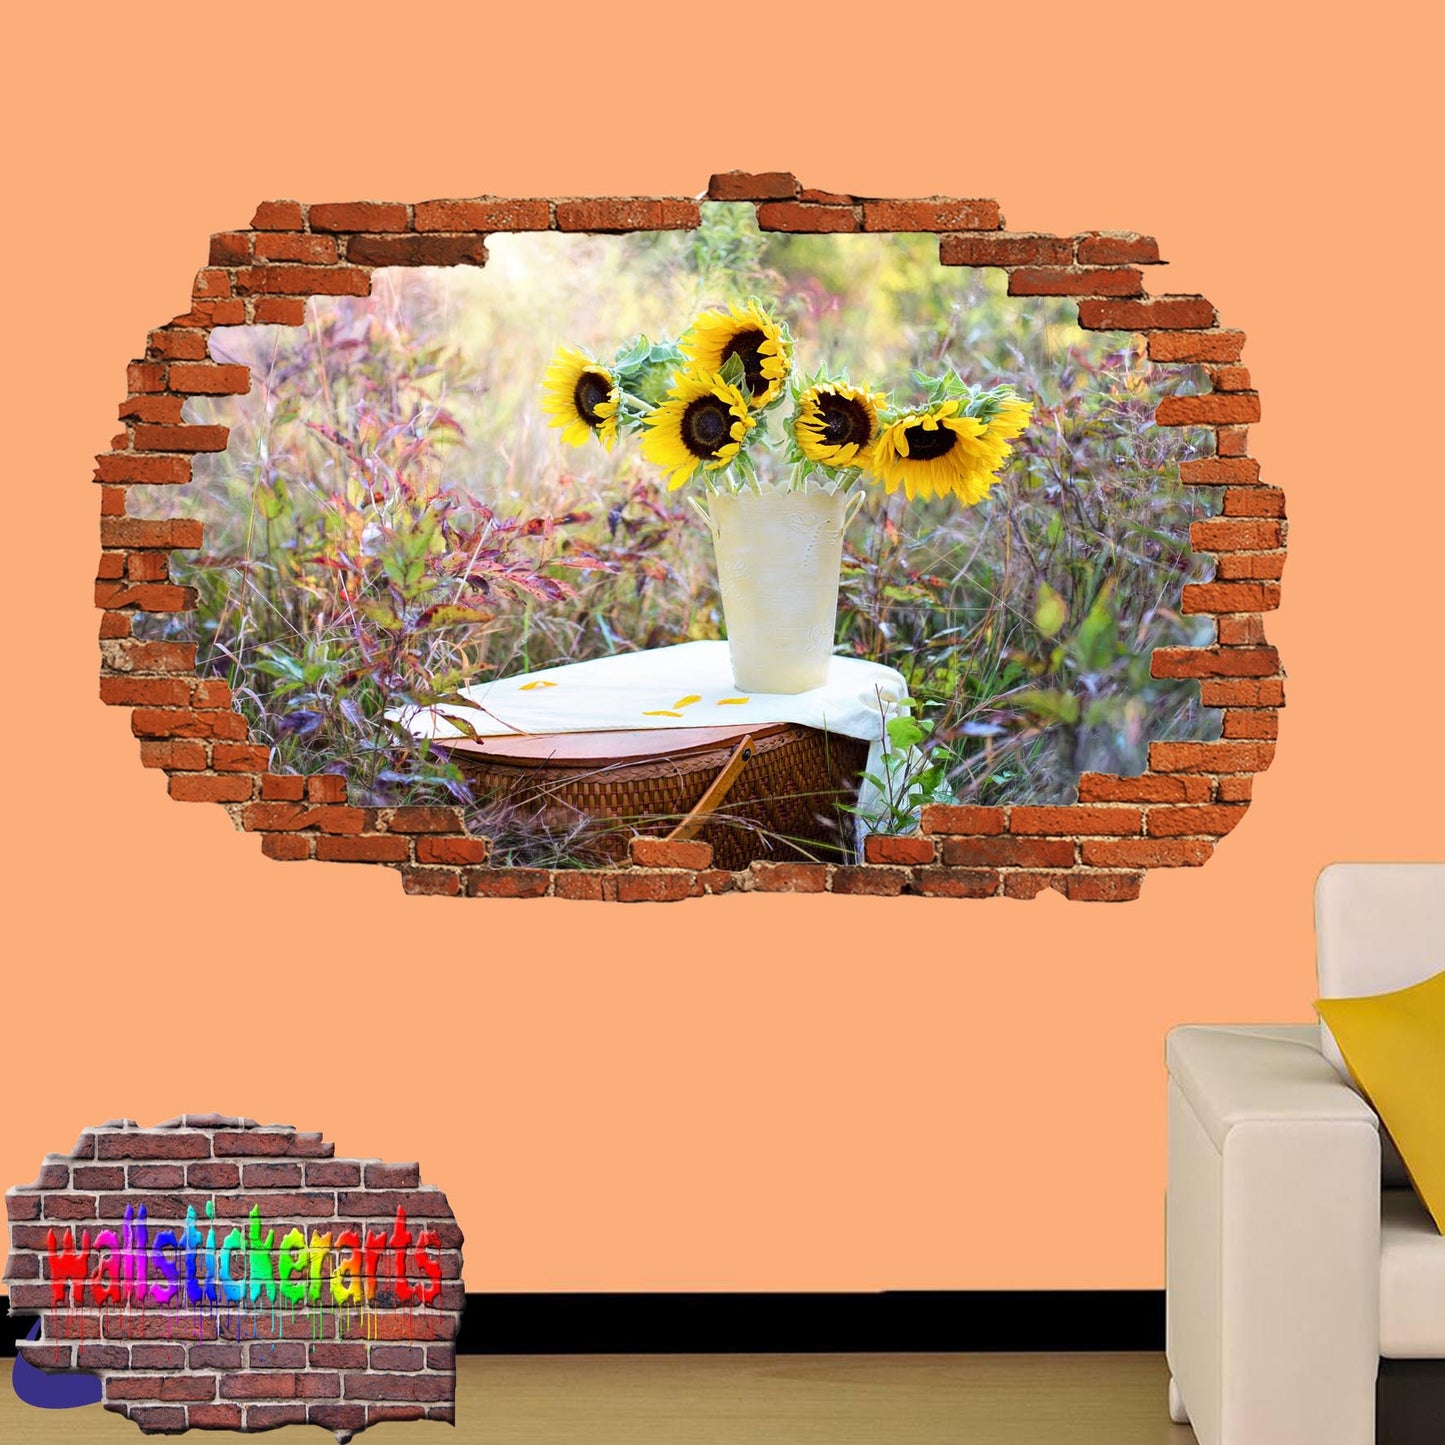 Picnic Basket Sunflowers 3d Art Wall Sticker Mural Room Office Shop Home Decor Decal ZE5